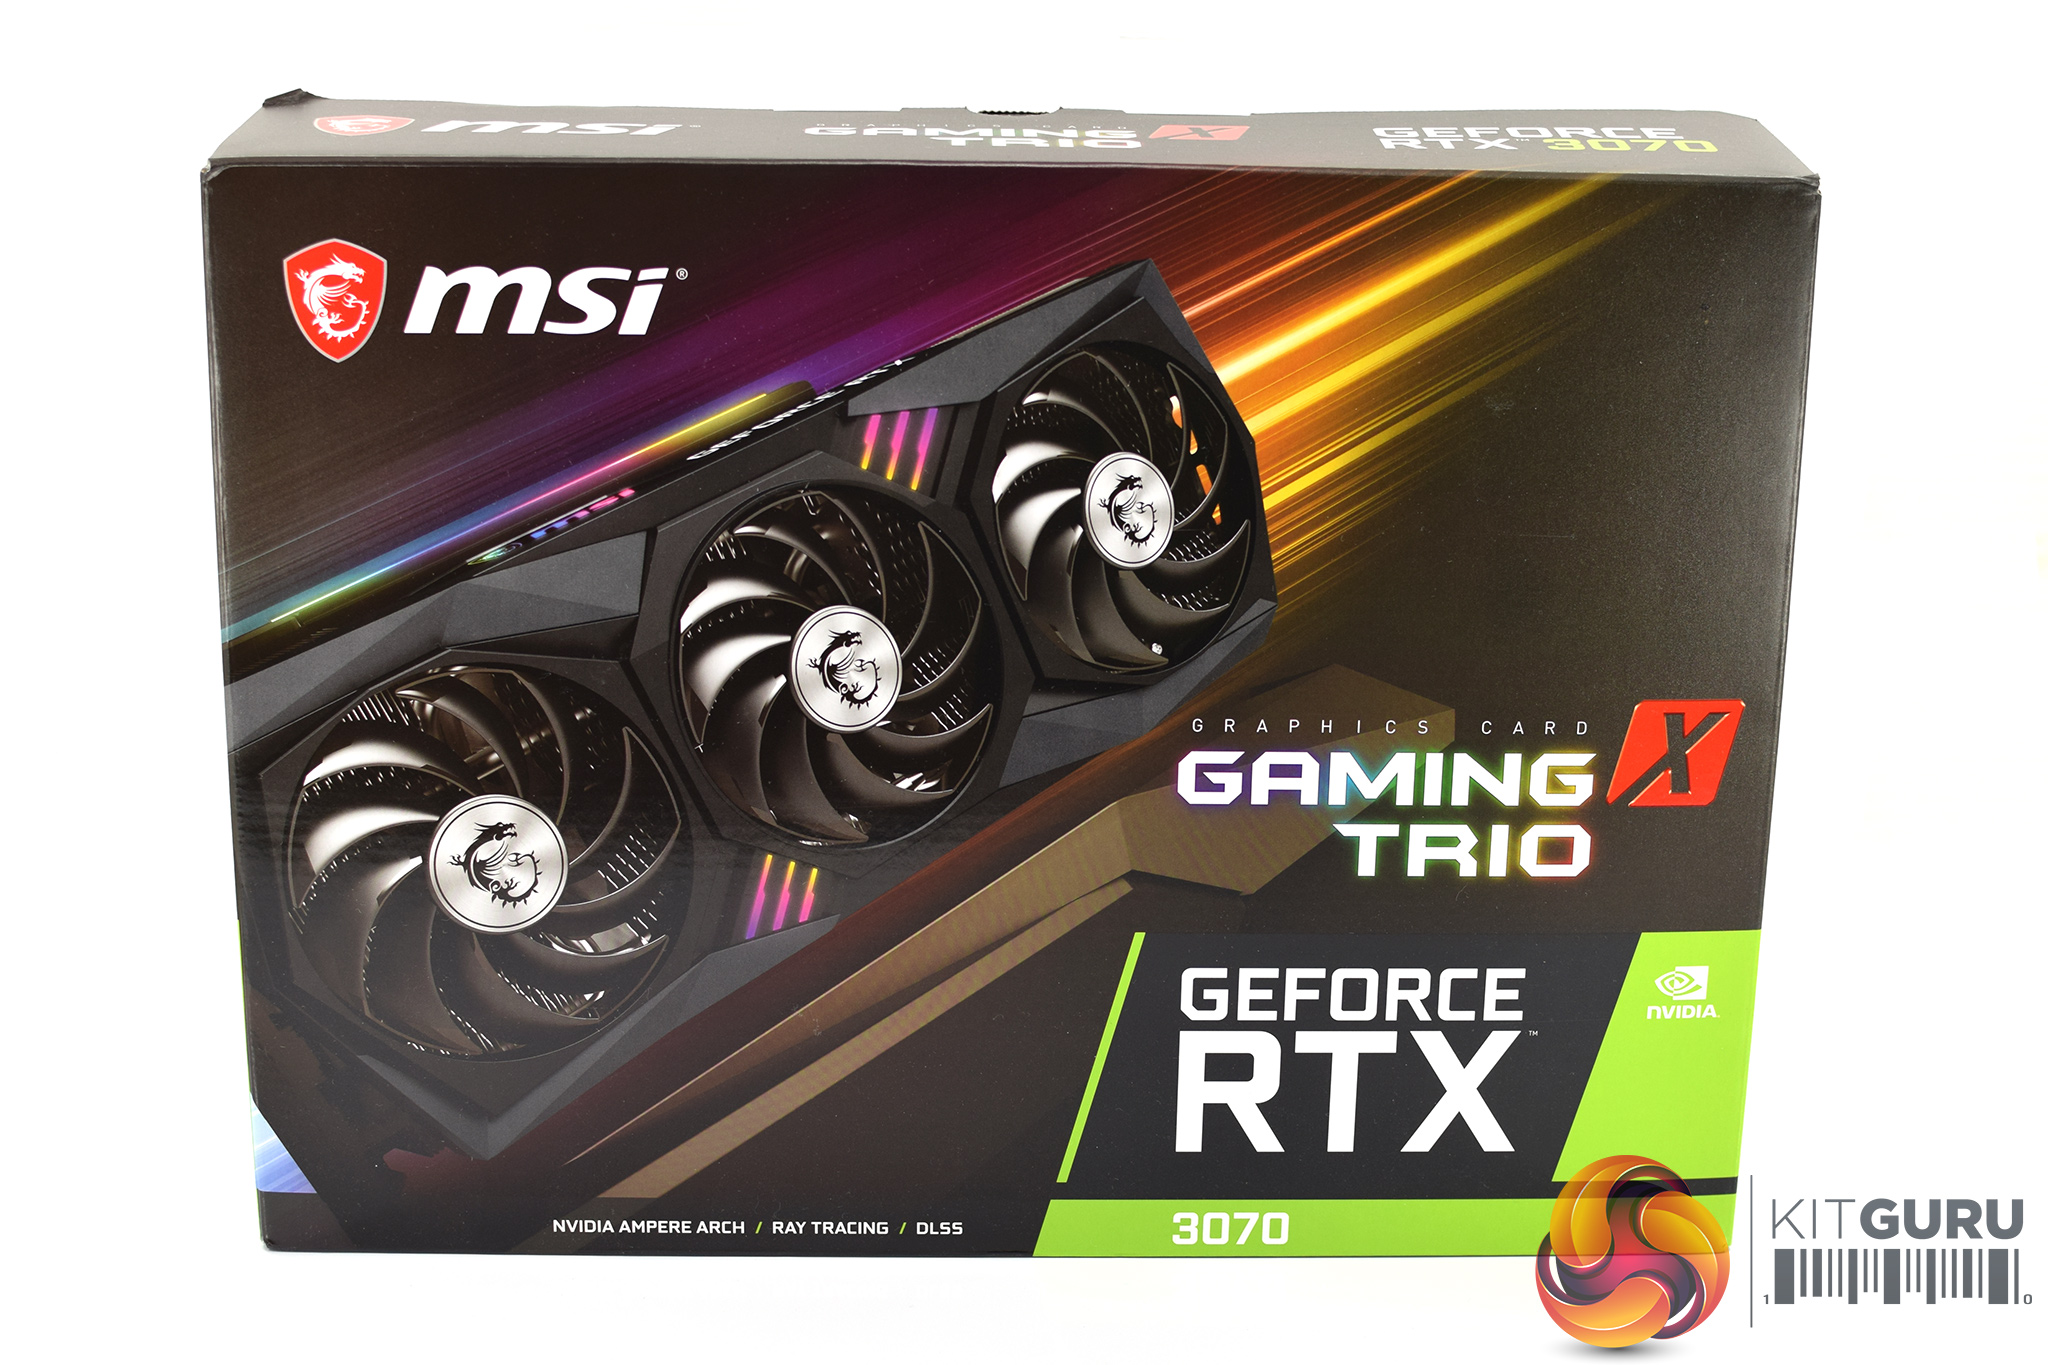 Geforce rtx 4090 gaming x trio. RTX 3060 ti 8gb коробка. RTX 3080 MSI. MSI RTX 3070 ti Gaming Trio. RTX 3060 MSI 8gb.